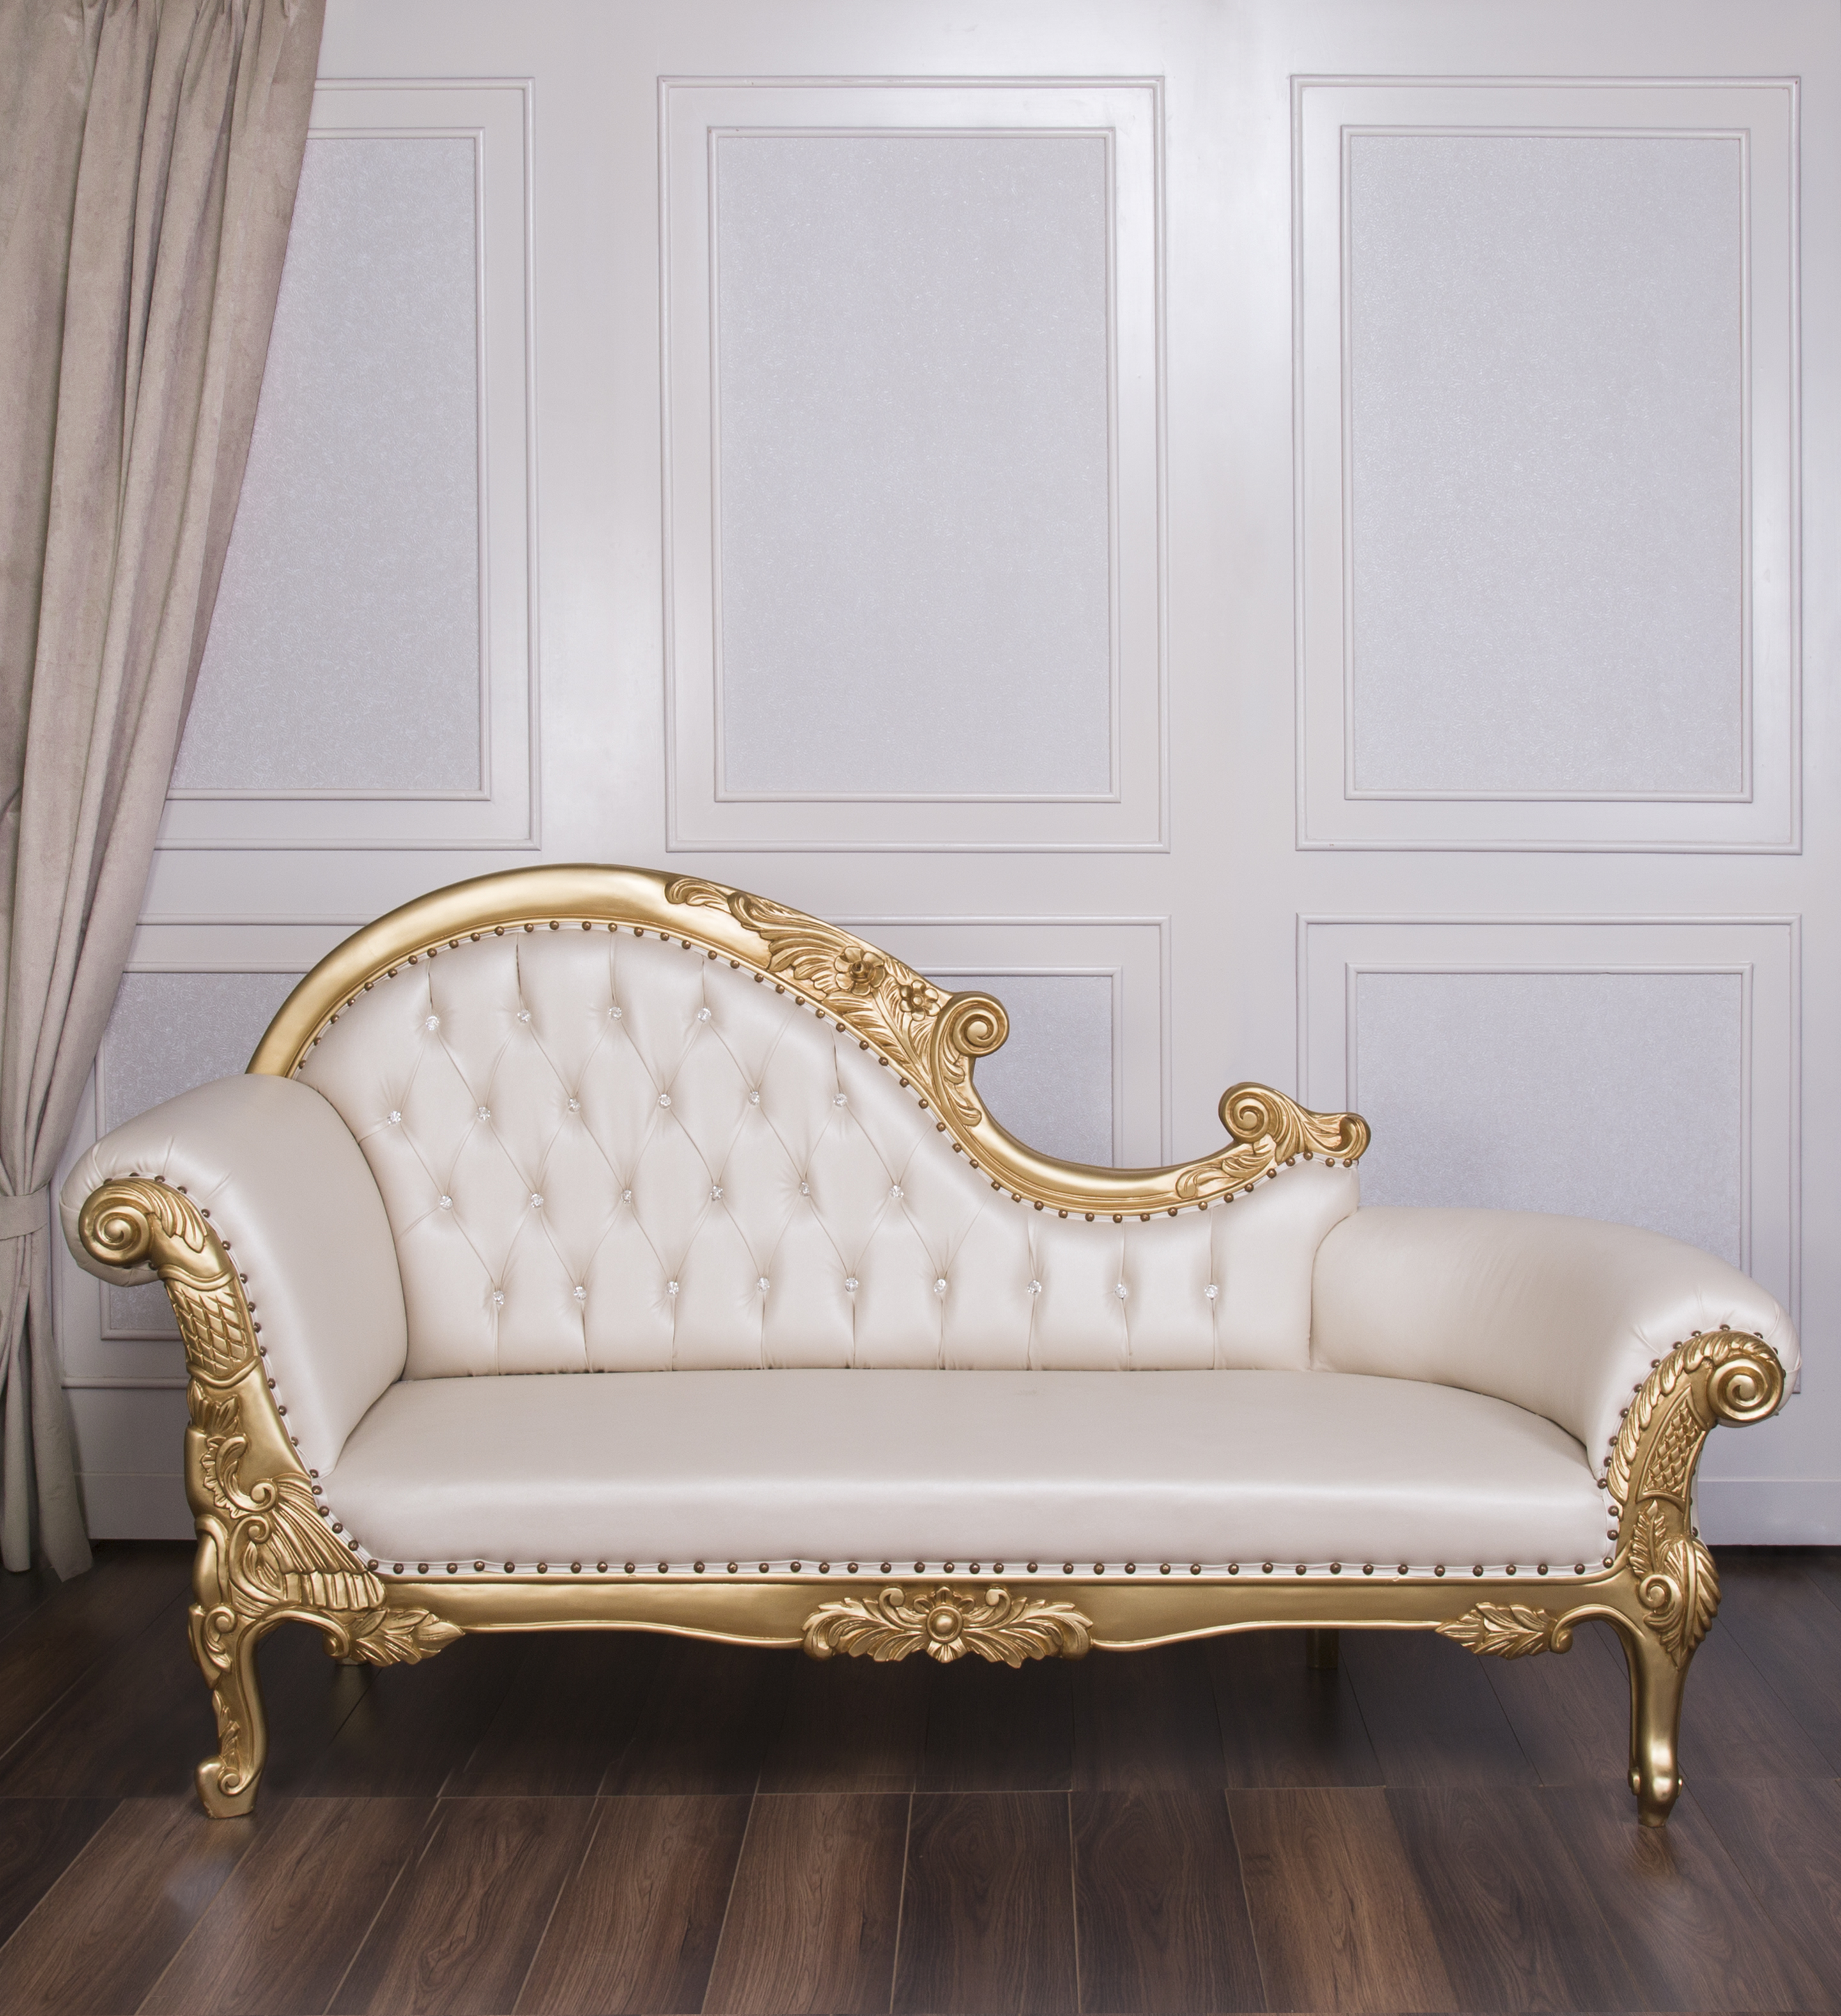 Gold & Champagne Leather Nefertiti Chaise Lounge